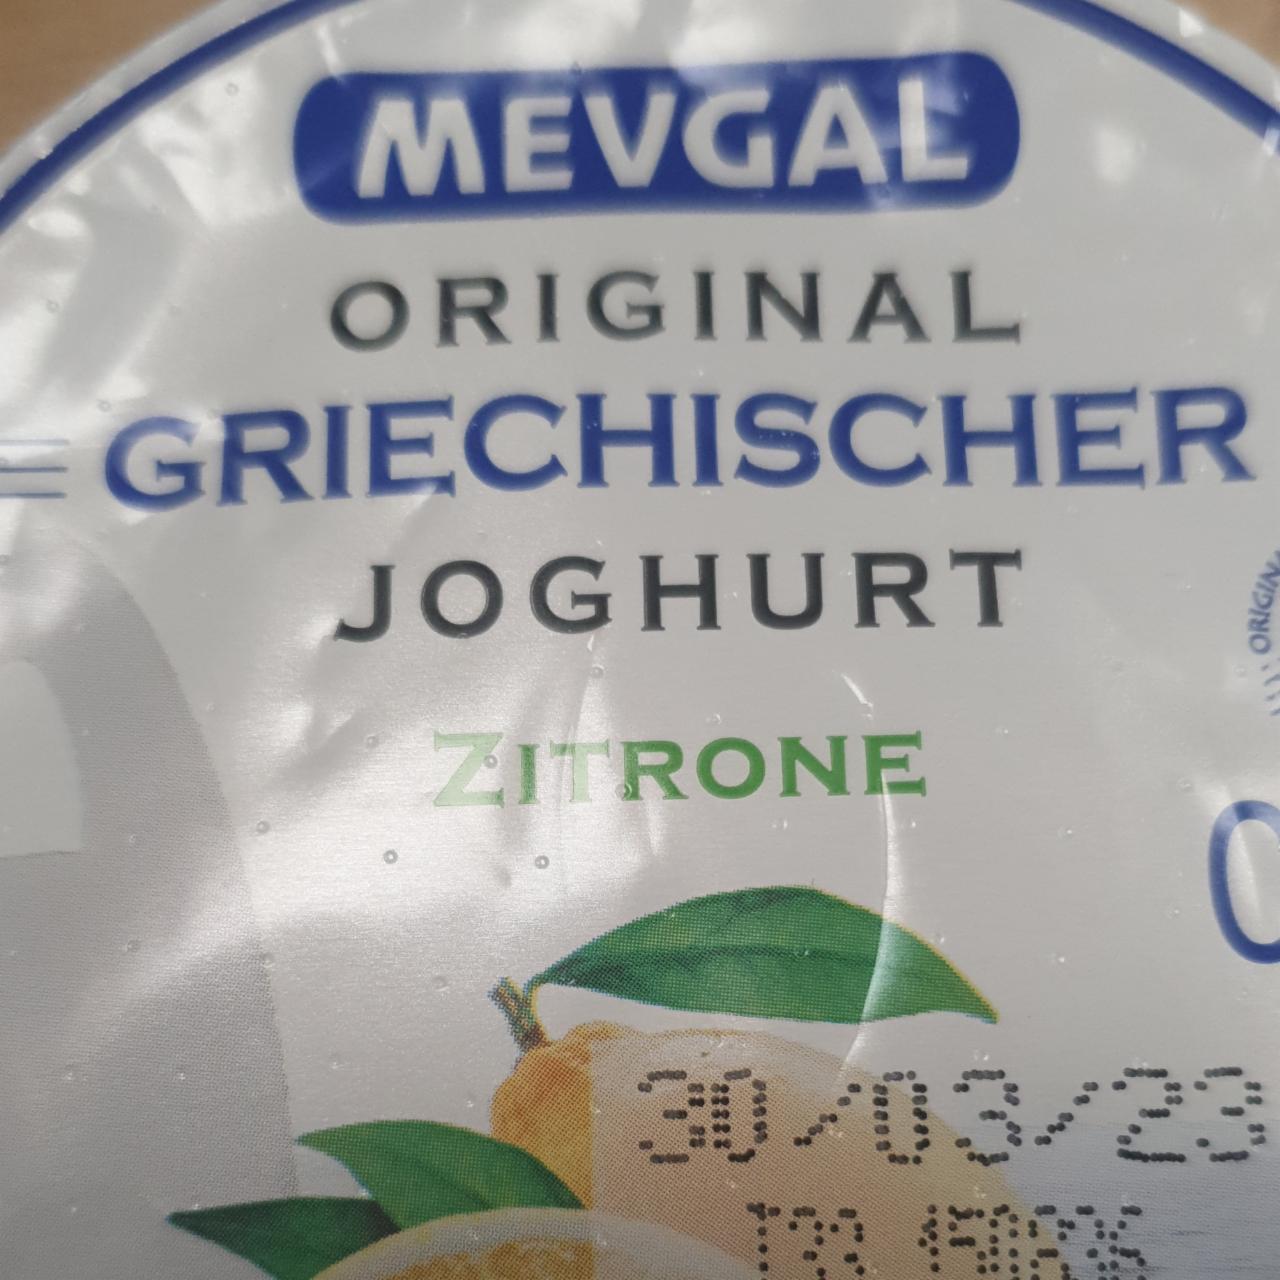 Fotografie - Original griechischier Joghurt Zitrone Mevgal